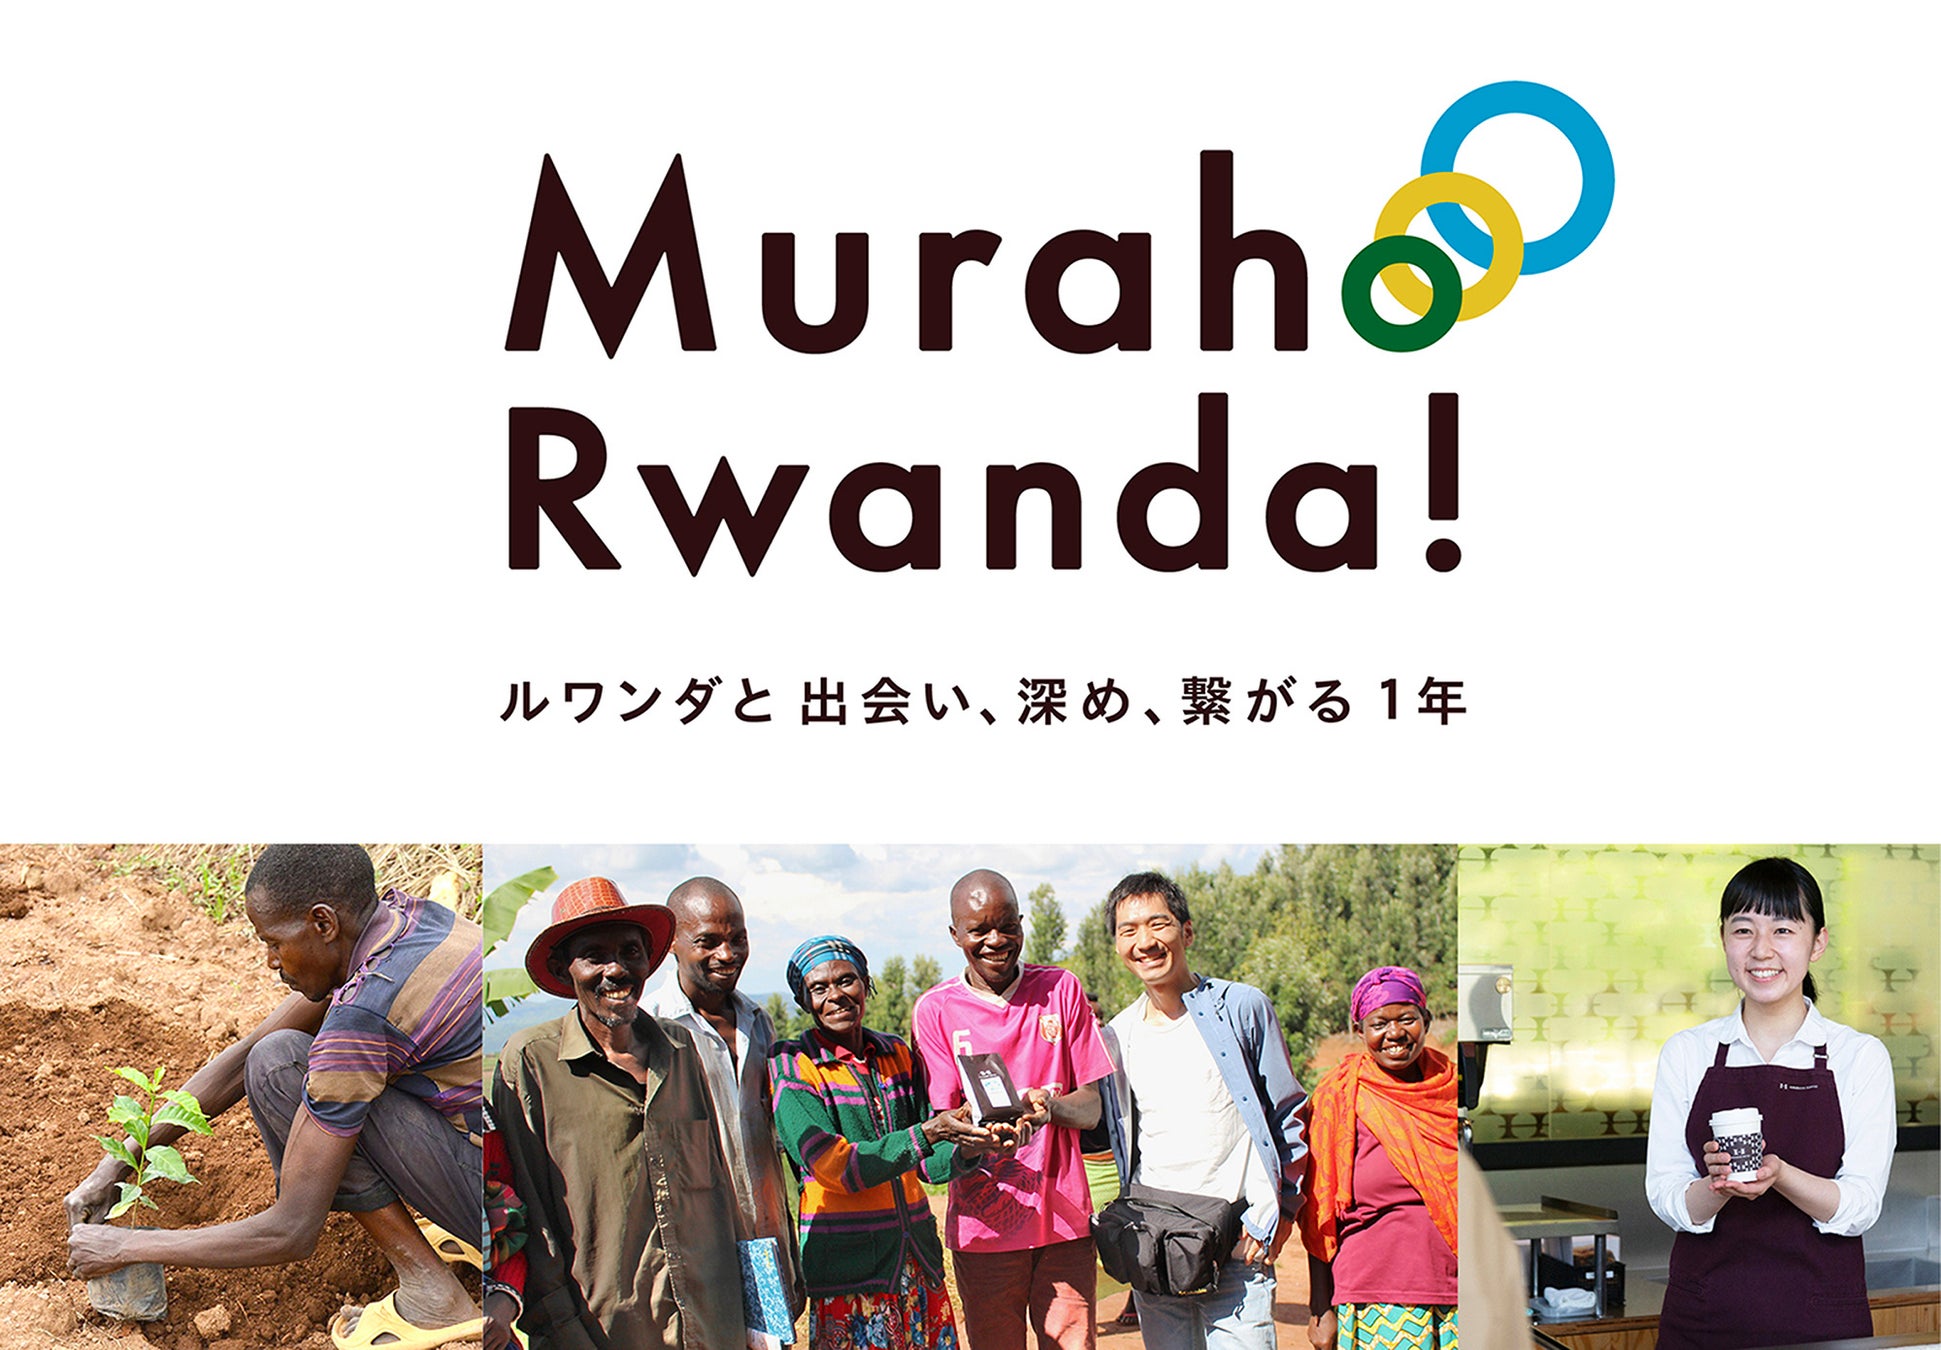 イベント「ルワンダと繋がる12日間」を開催　～ルワンダコーヒーの売上全額をルワンダへ寄付～　期間：10月7日（金）～10月18日（火）のサブ画像1_※「Muraho」はルワンダの言葉（キニャルワンダ語）で Hello という意味です。